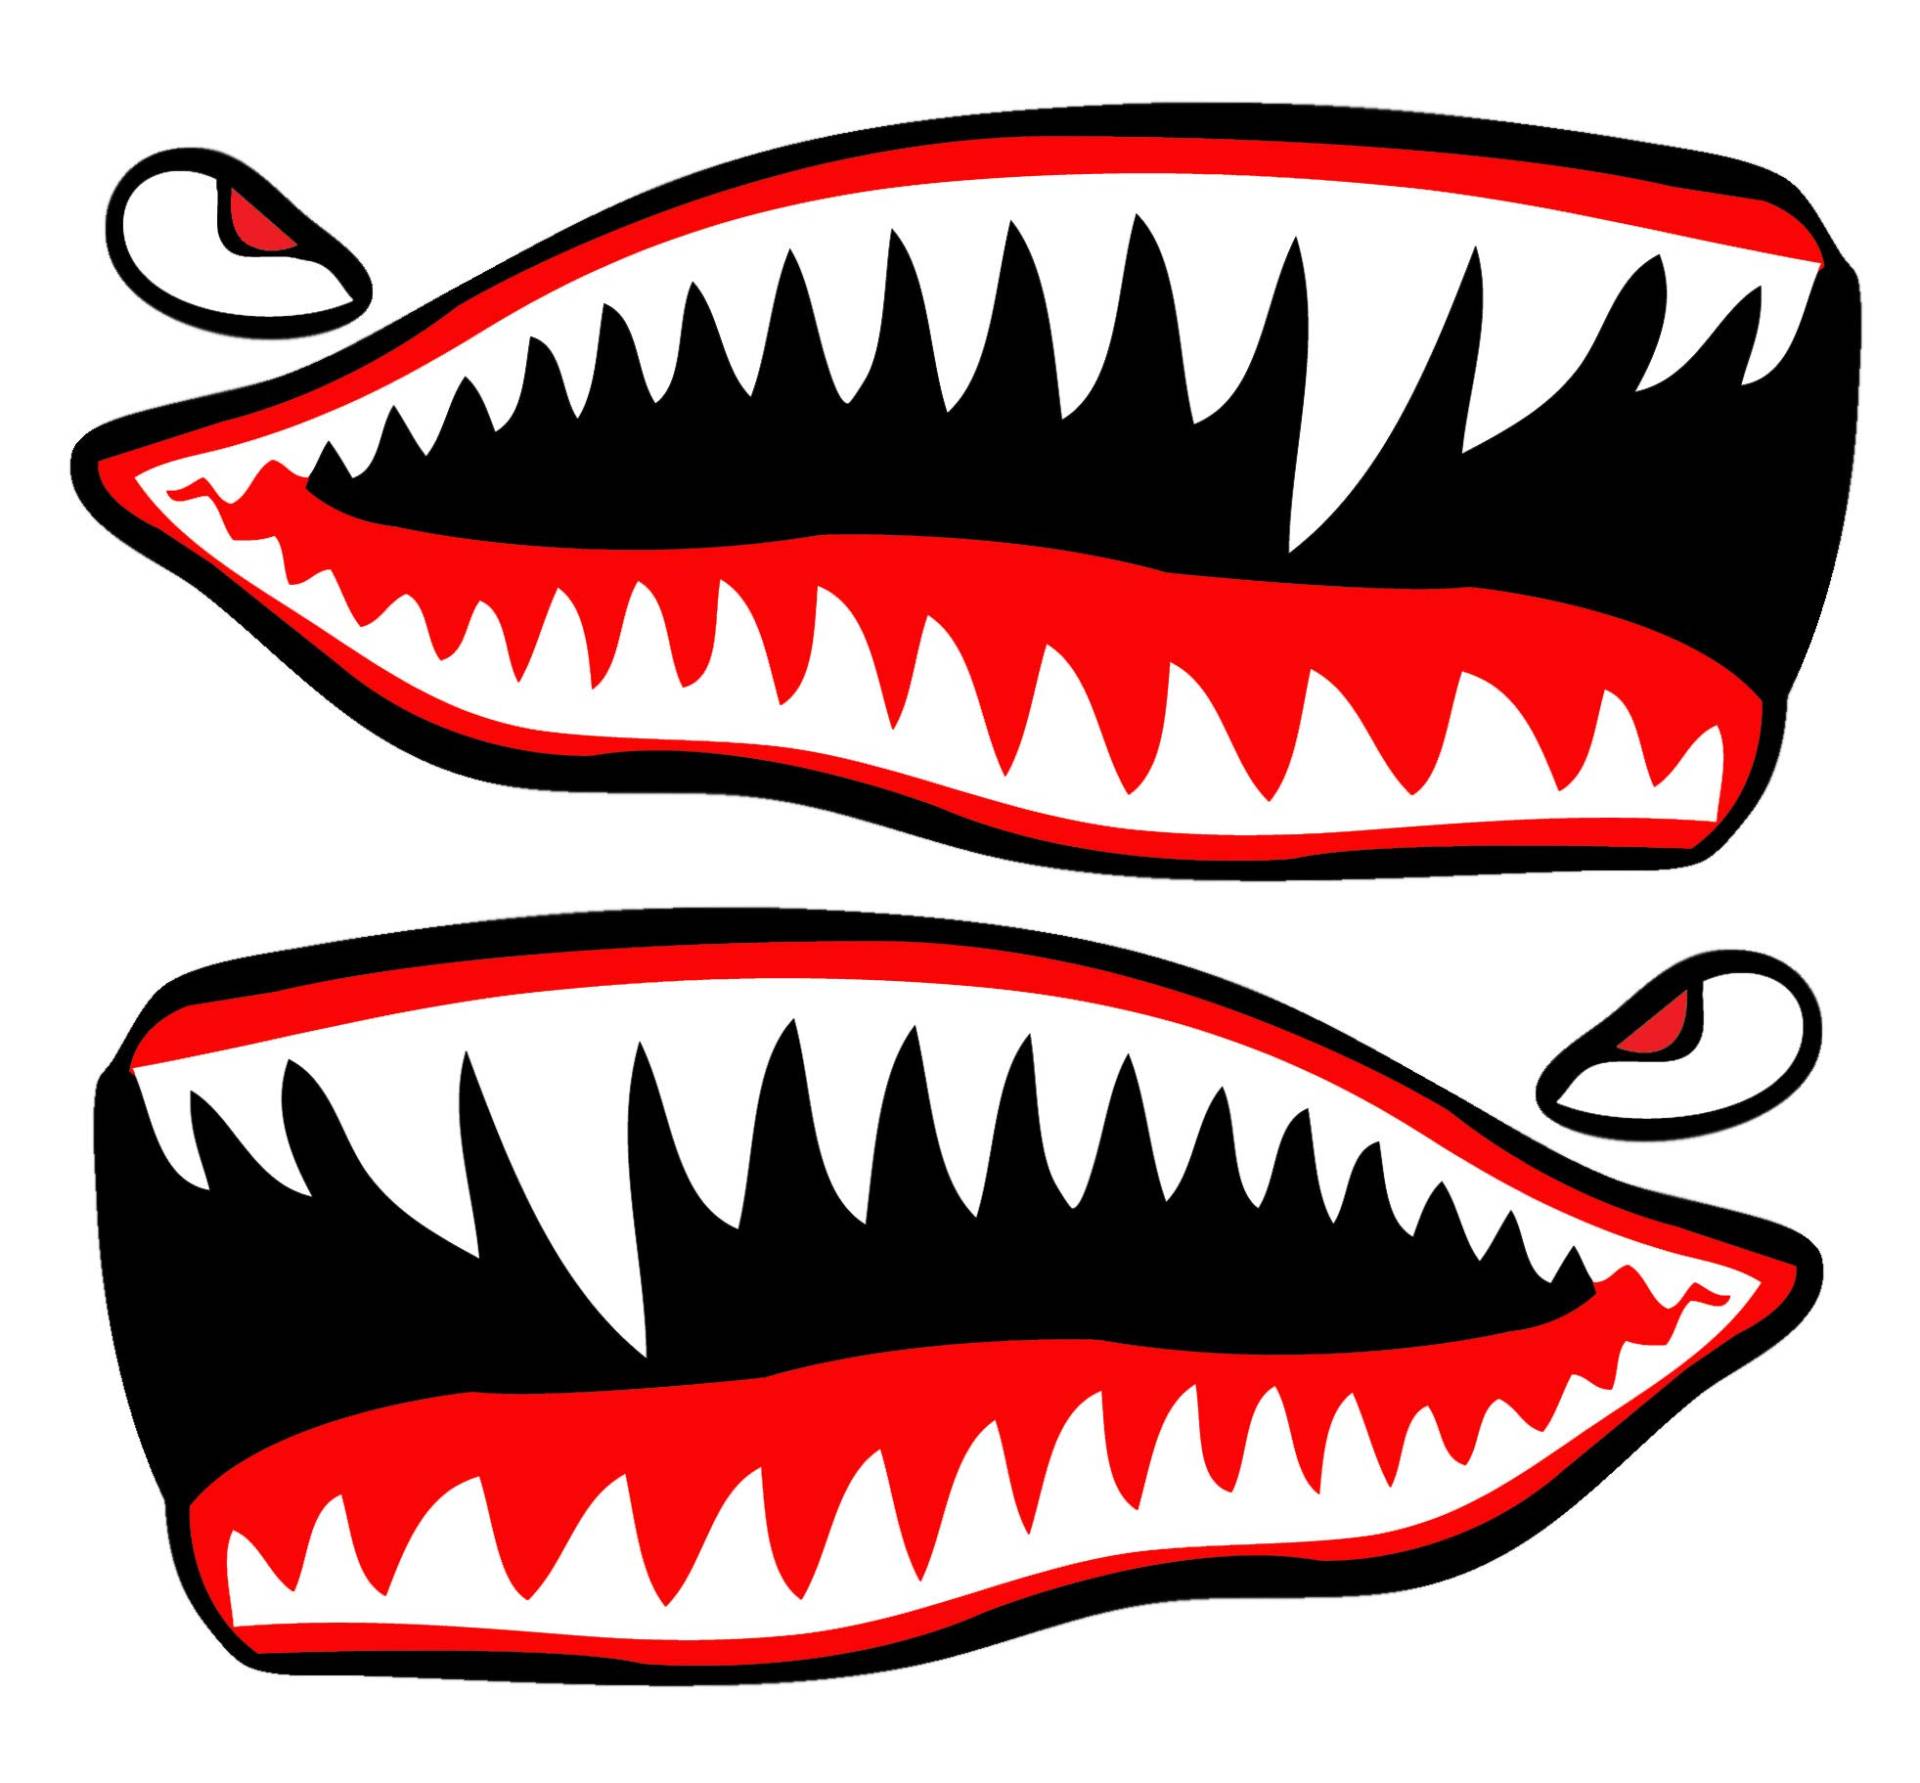 SkinoEu® 2 Stück Vinyl Aufkleber Autoaufkleber Rot Haifischmaul Zähne Haifisch Shark Teeth Fischen Meerestier Fischerboot Stickers Spiegel Auto Moto Motorrad Fahrrad Helm Fenster Tür Tuning B 64 von Skino